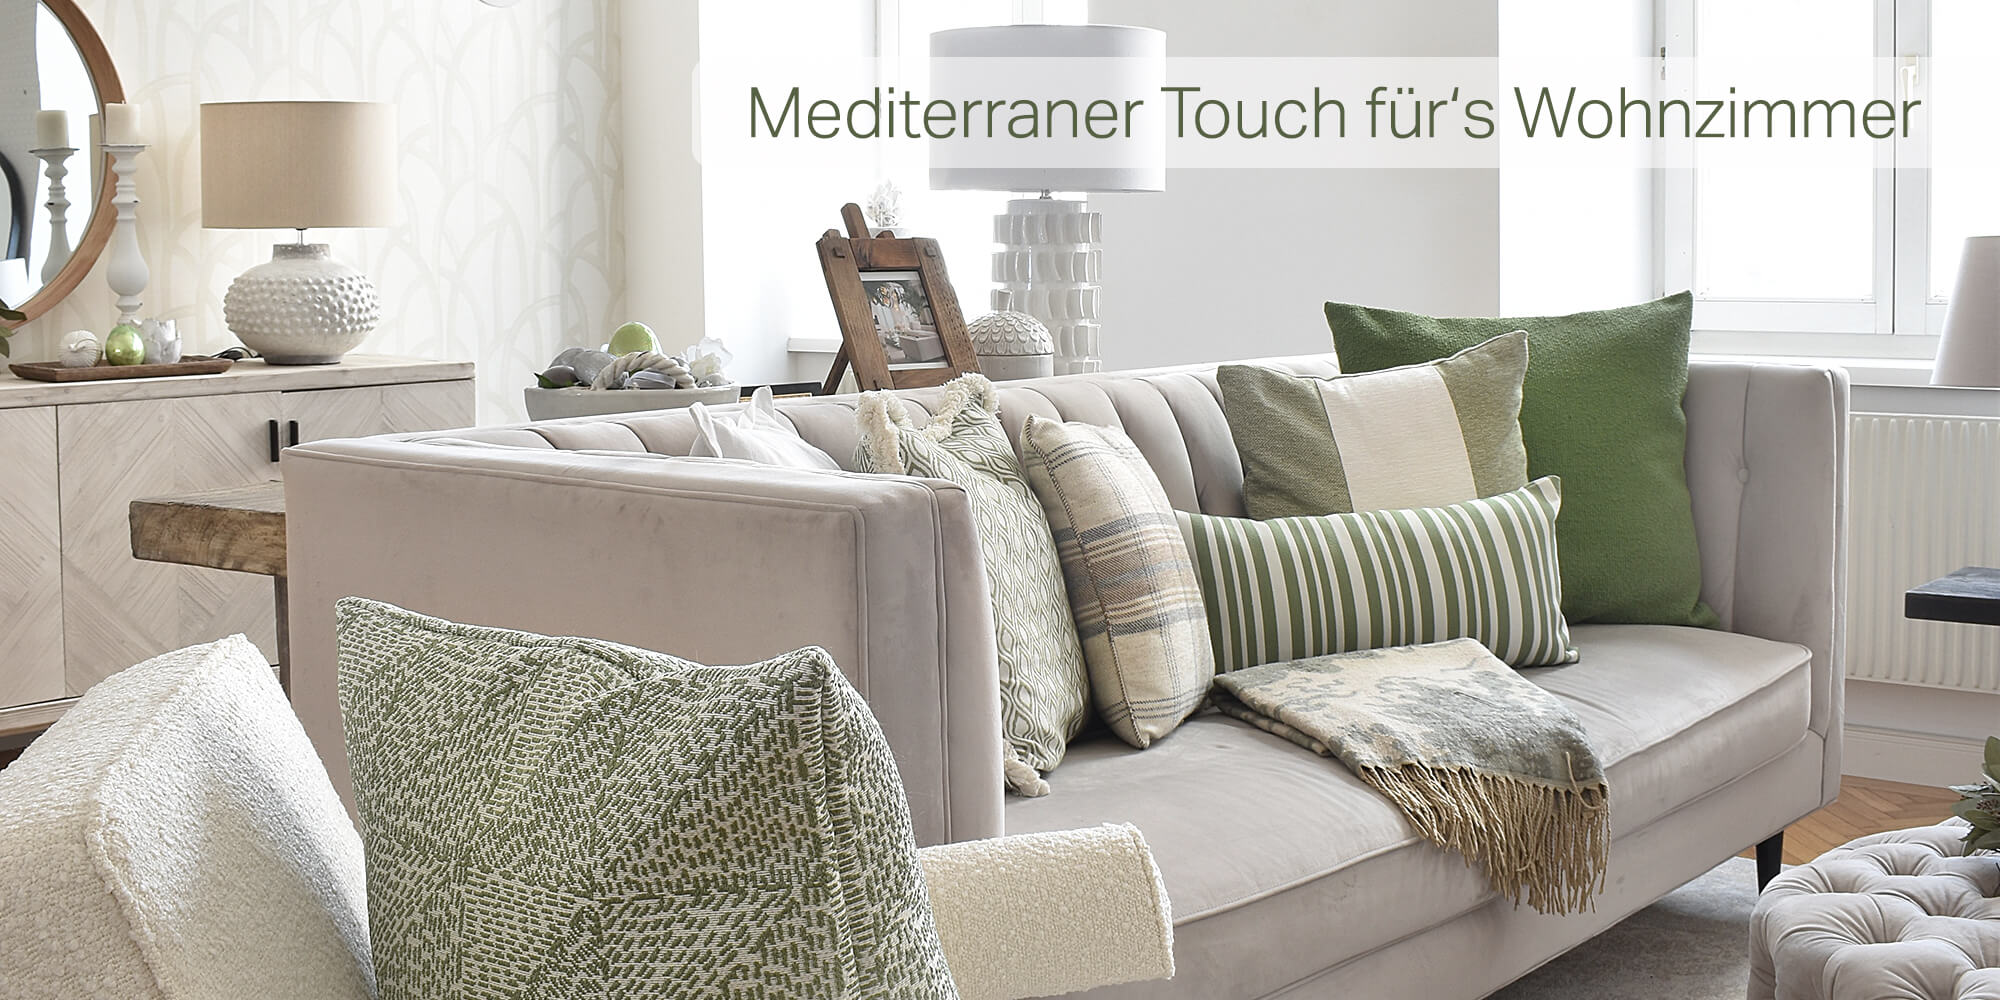 Mediterraner Touch fürs Wohnzimmer